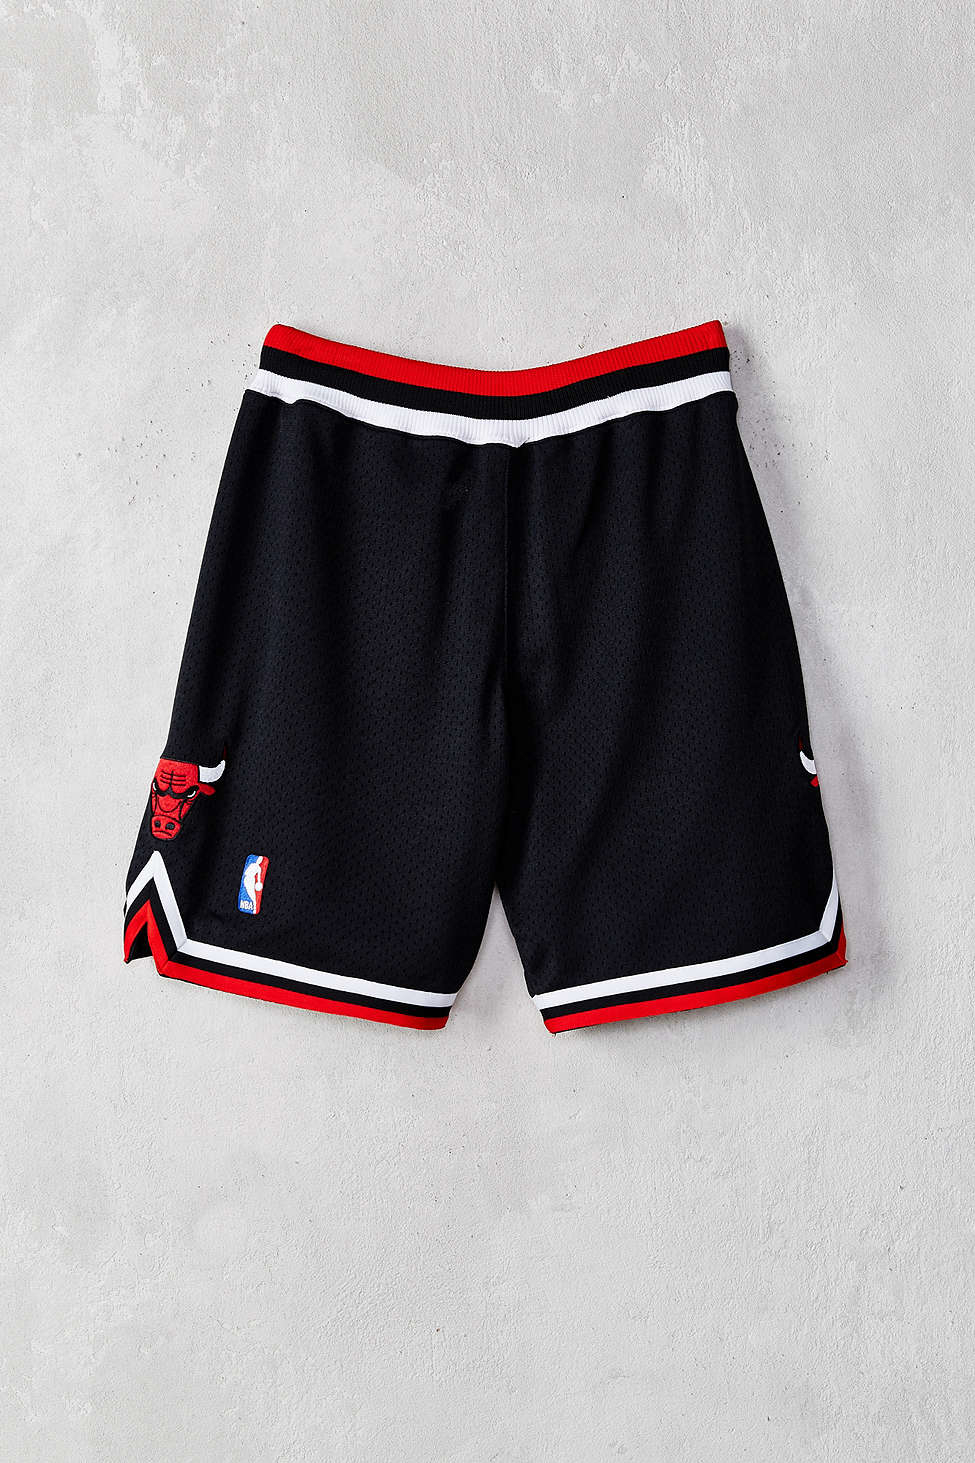 Mitchell & Ness NBA Authentic Shorts - White/Black